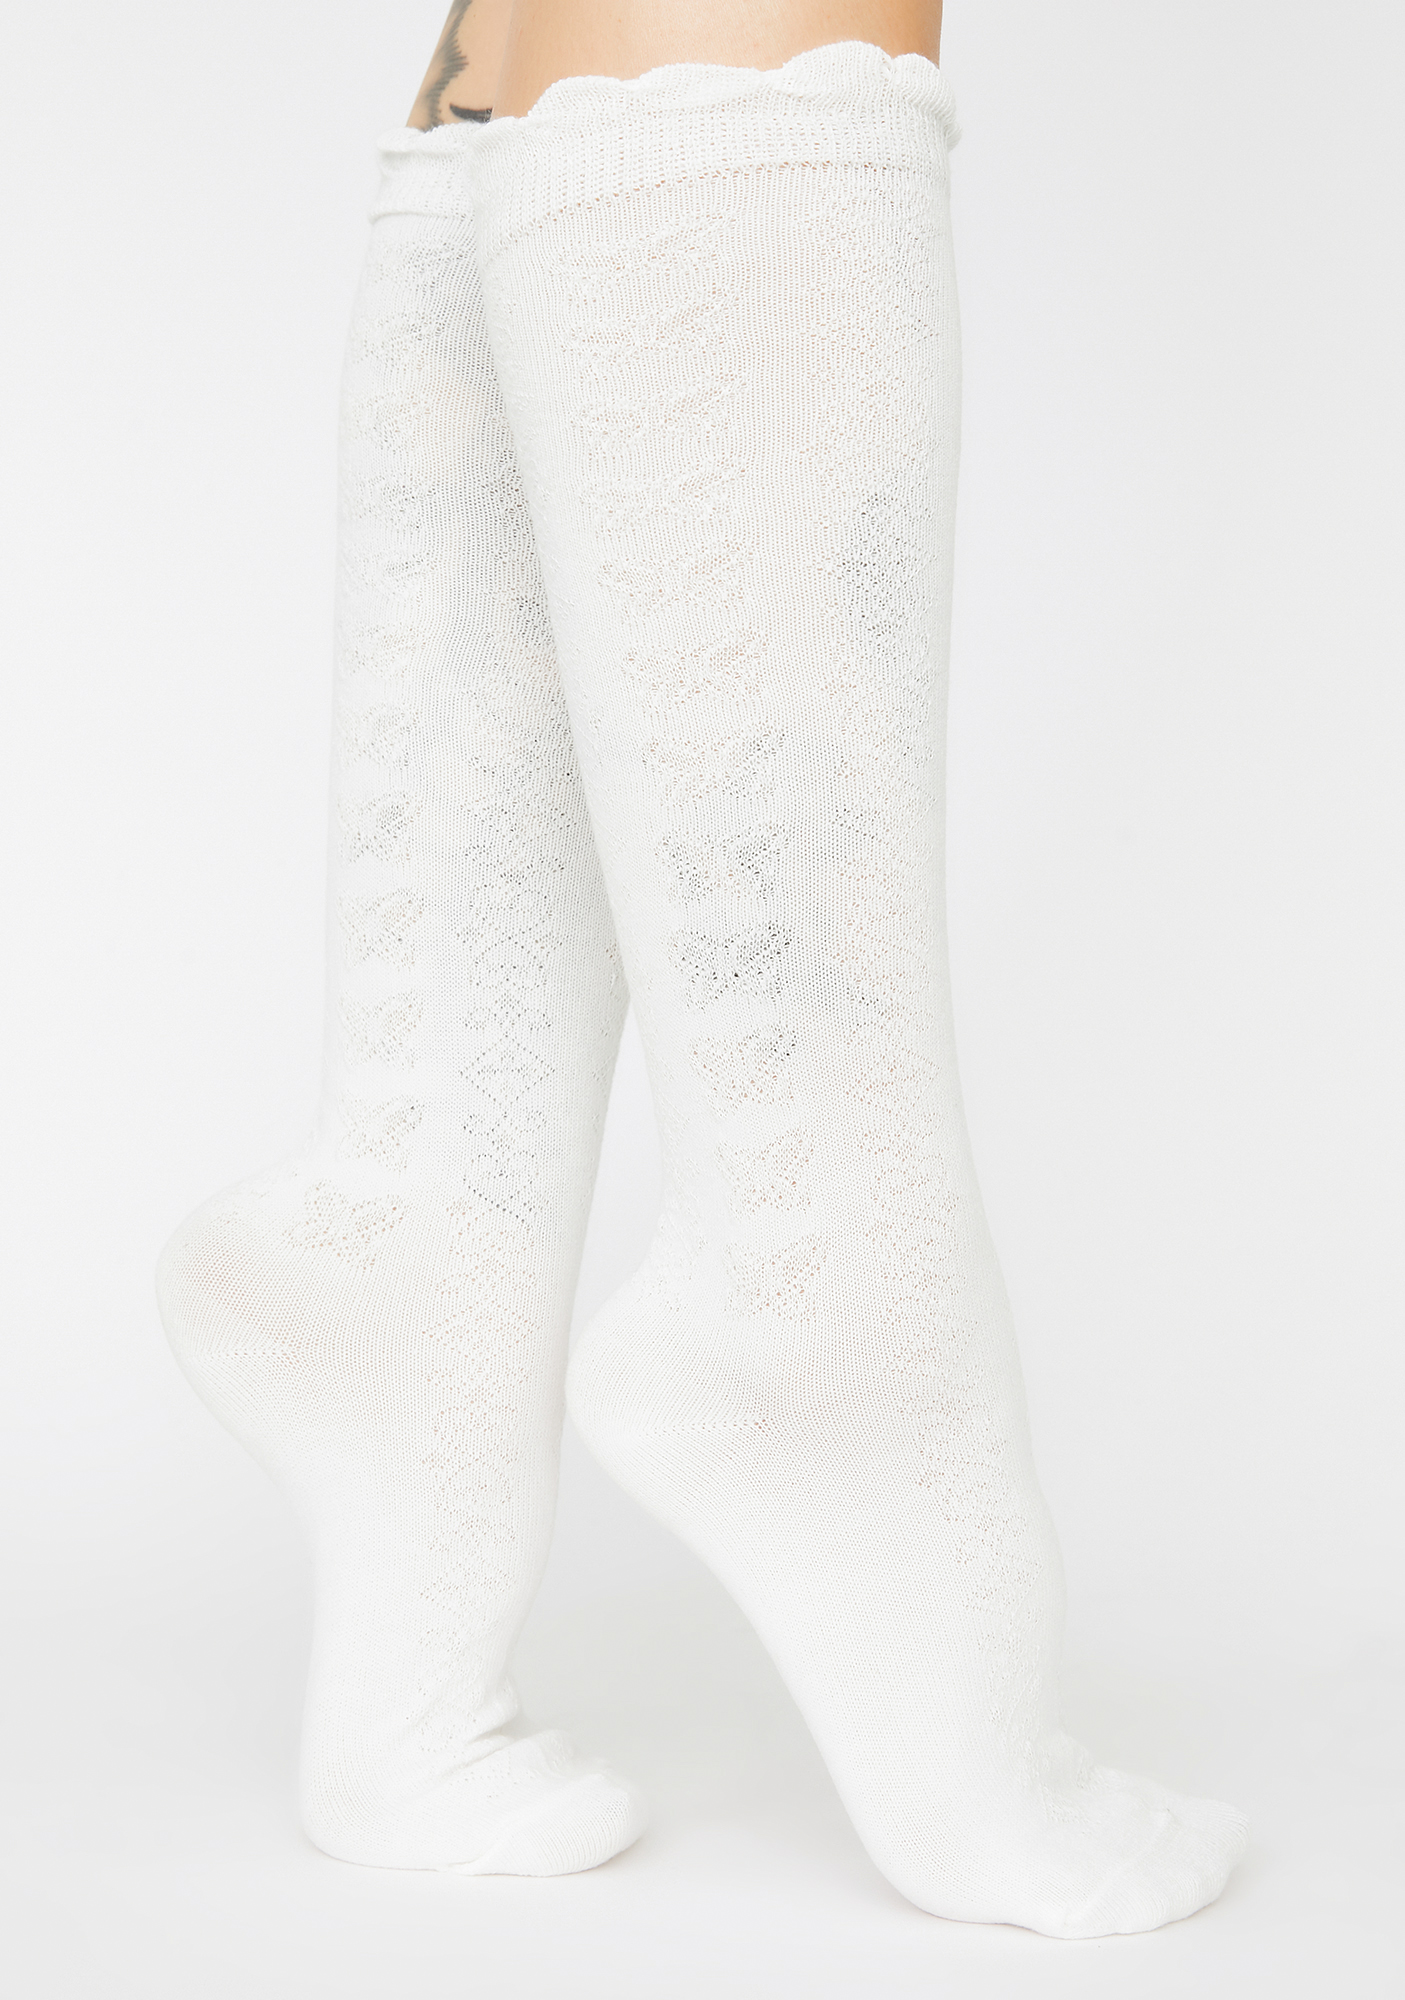 Scalloped Knee High Socks - White | Dolls Kill